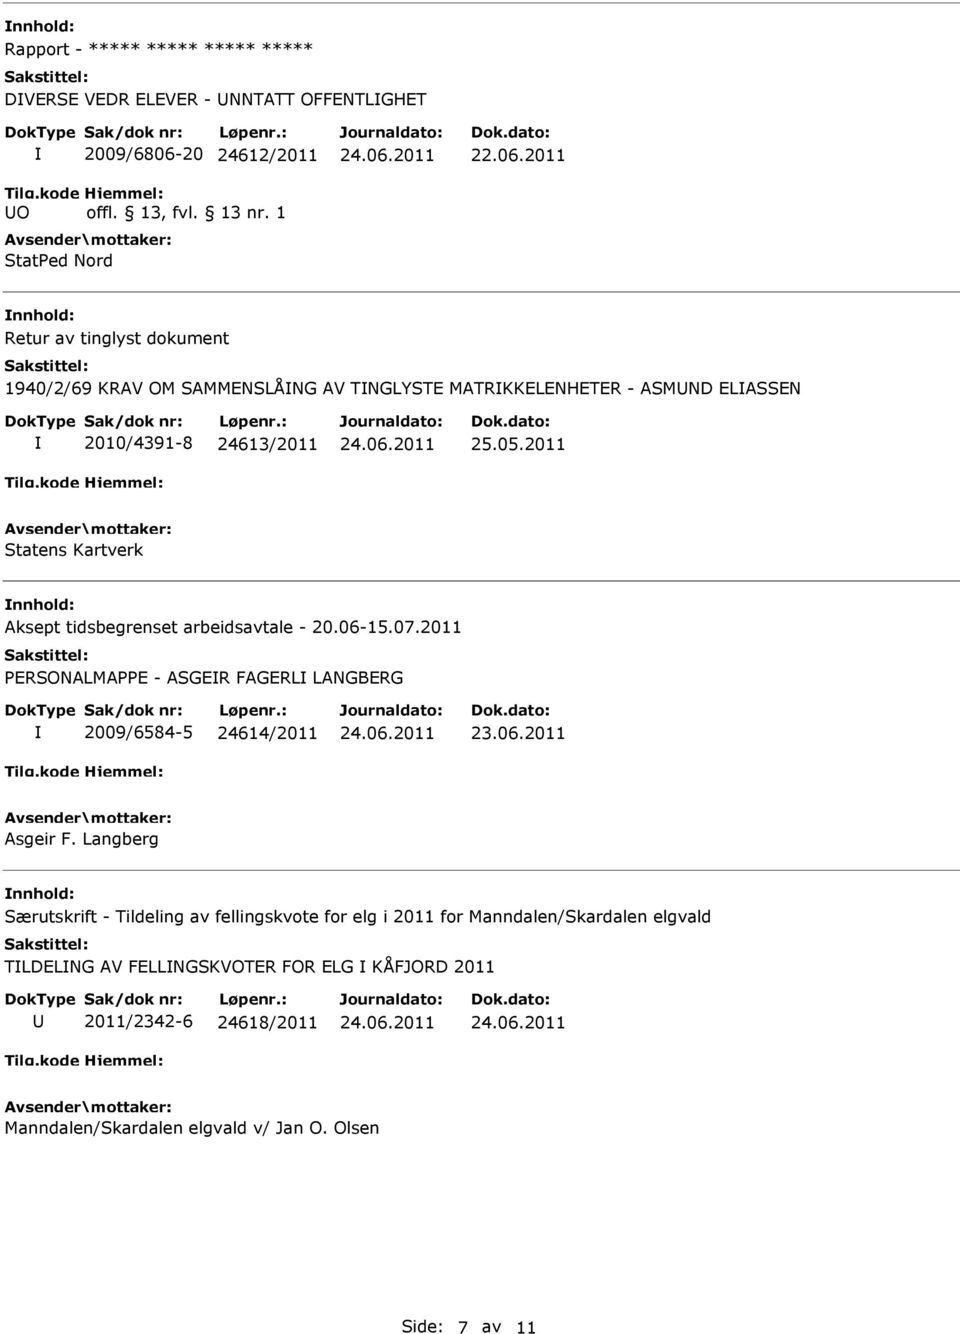 2011 nnhold: Aksept tidsbegrenset arbeidsavtale - 20.06-15.07.2011 PERSONALMAPPE - ASGER FAGERL LANGBERG 2009/6584-5 24614/2011 Asgeir F.